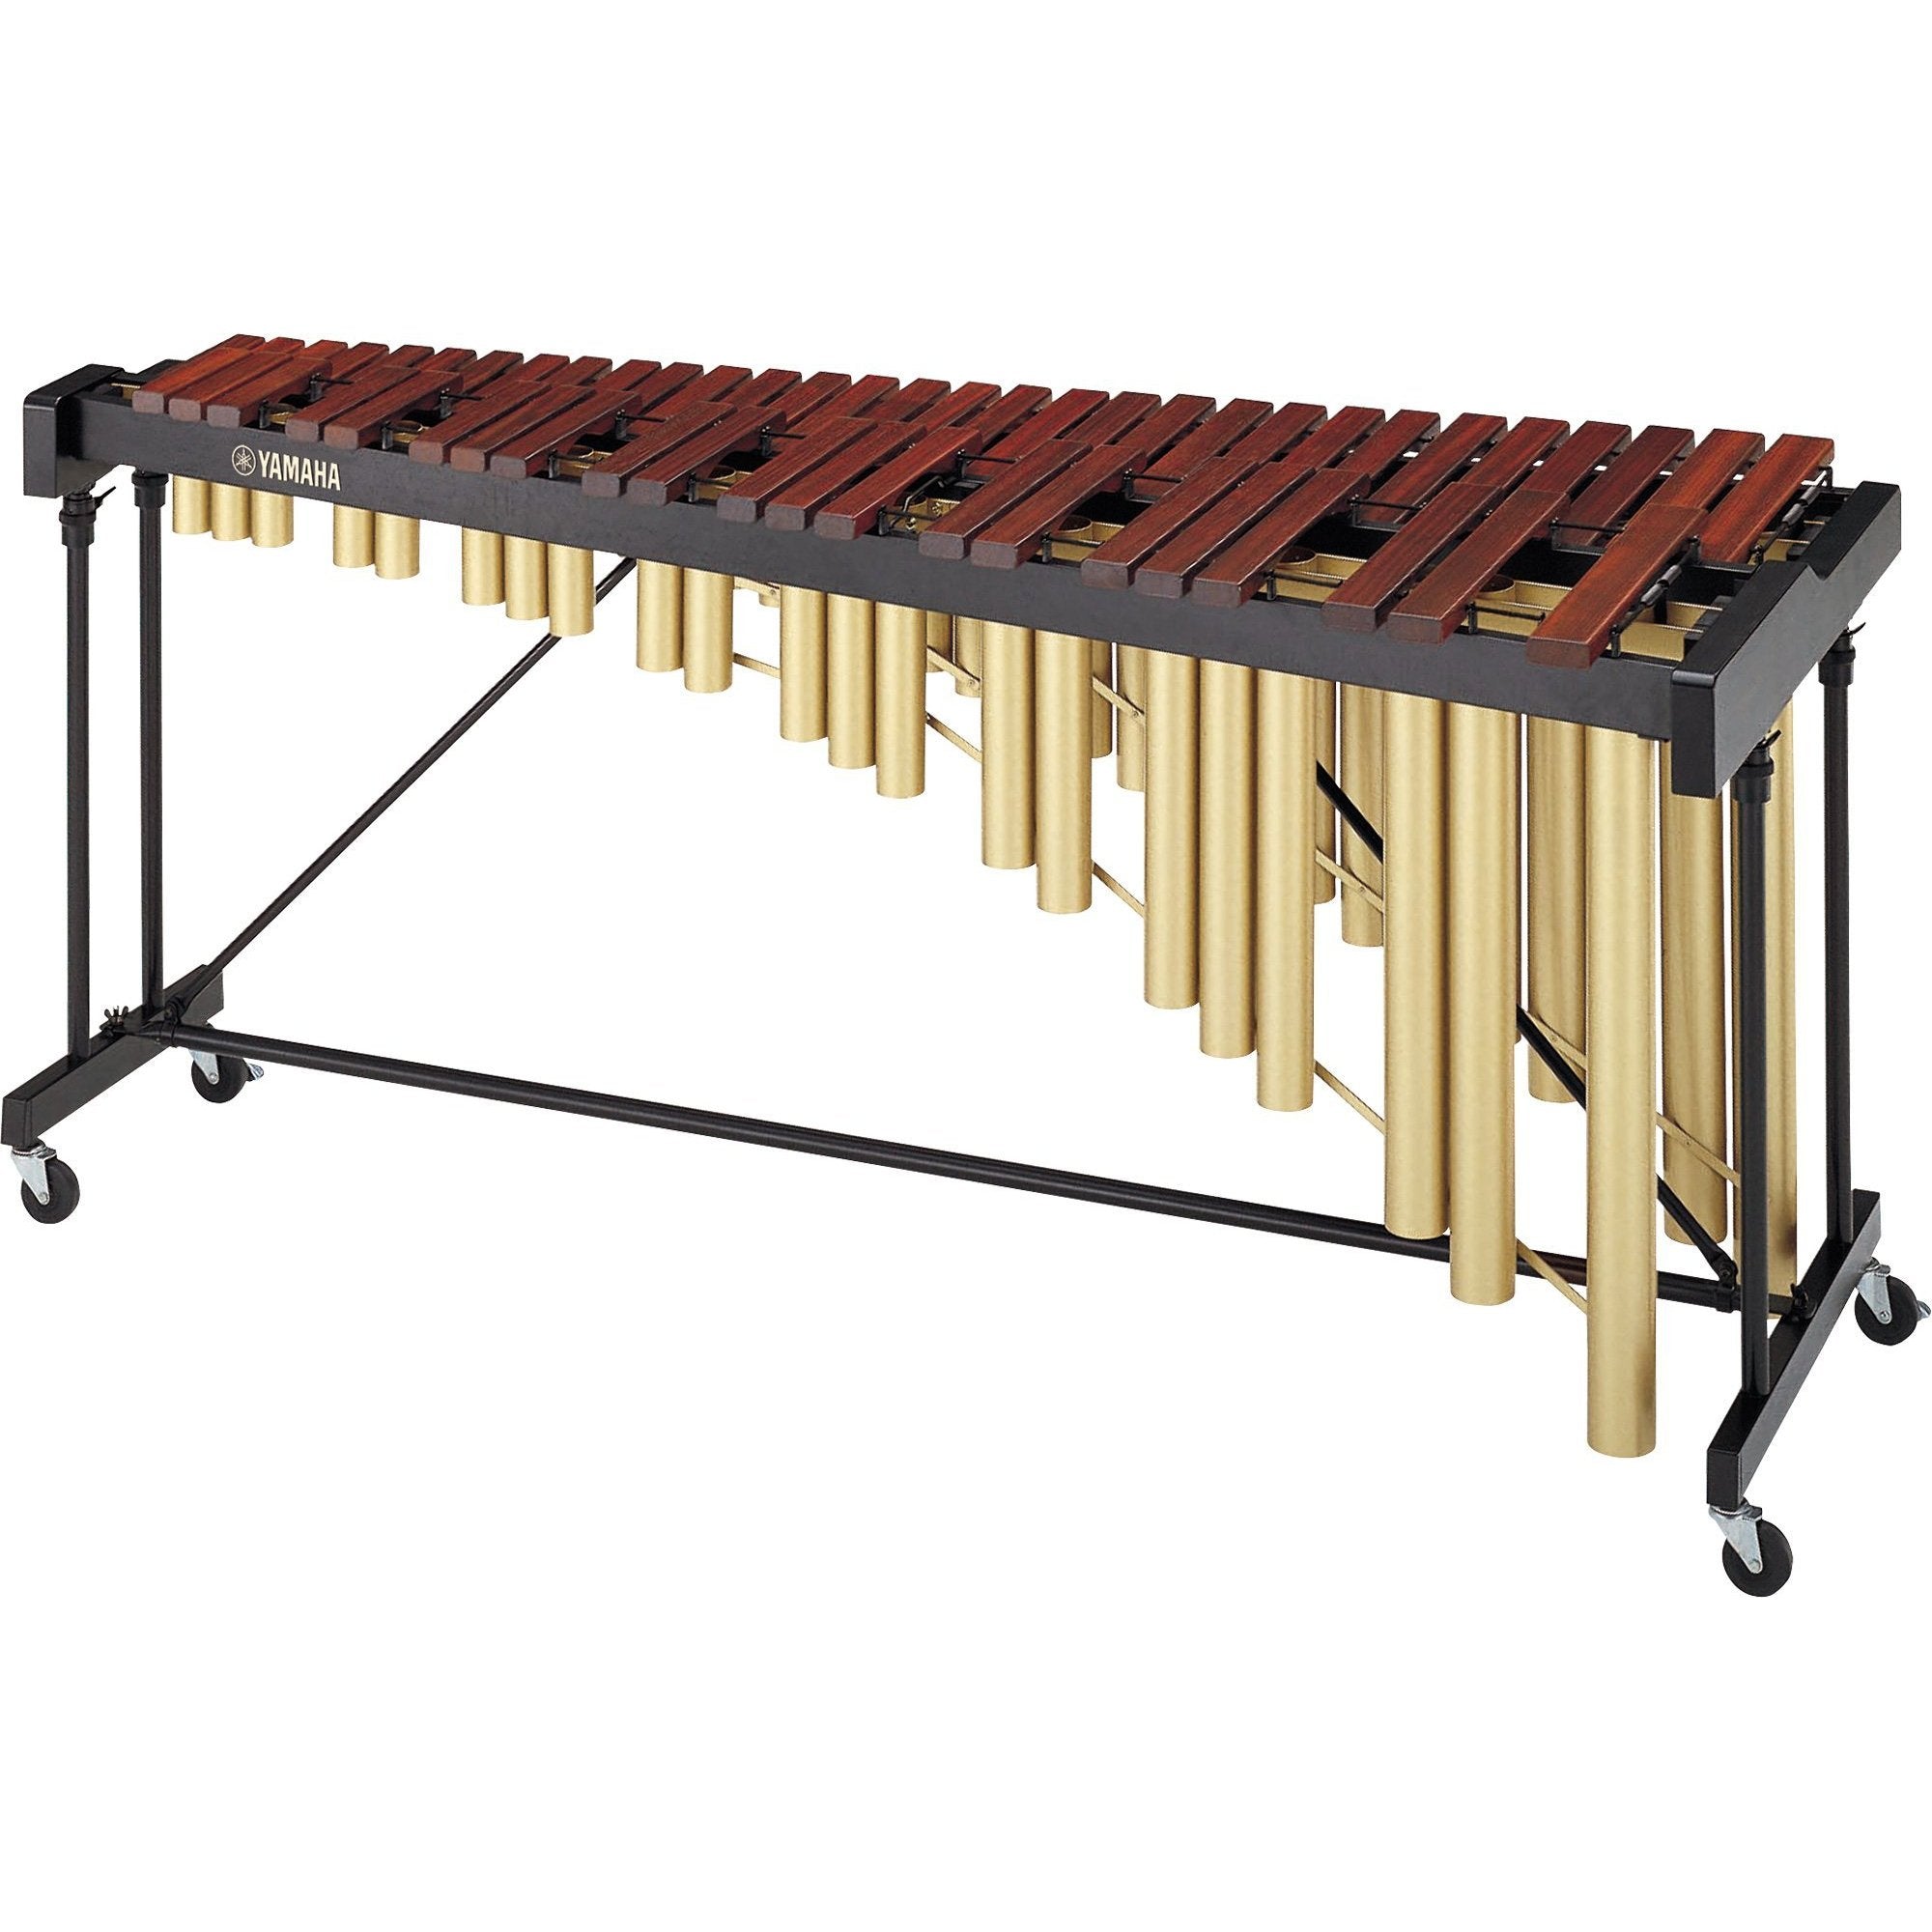 Yamaha - YM-1430 - Marimba (4 1/3-Octave)-Percussion-Yamaha-Music Elements